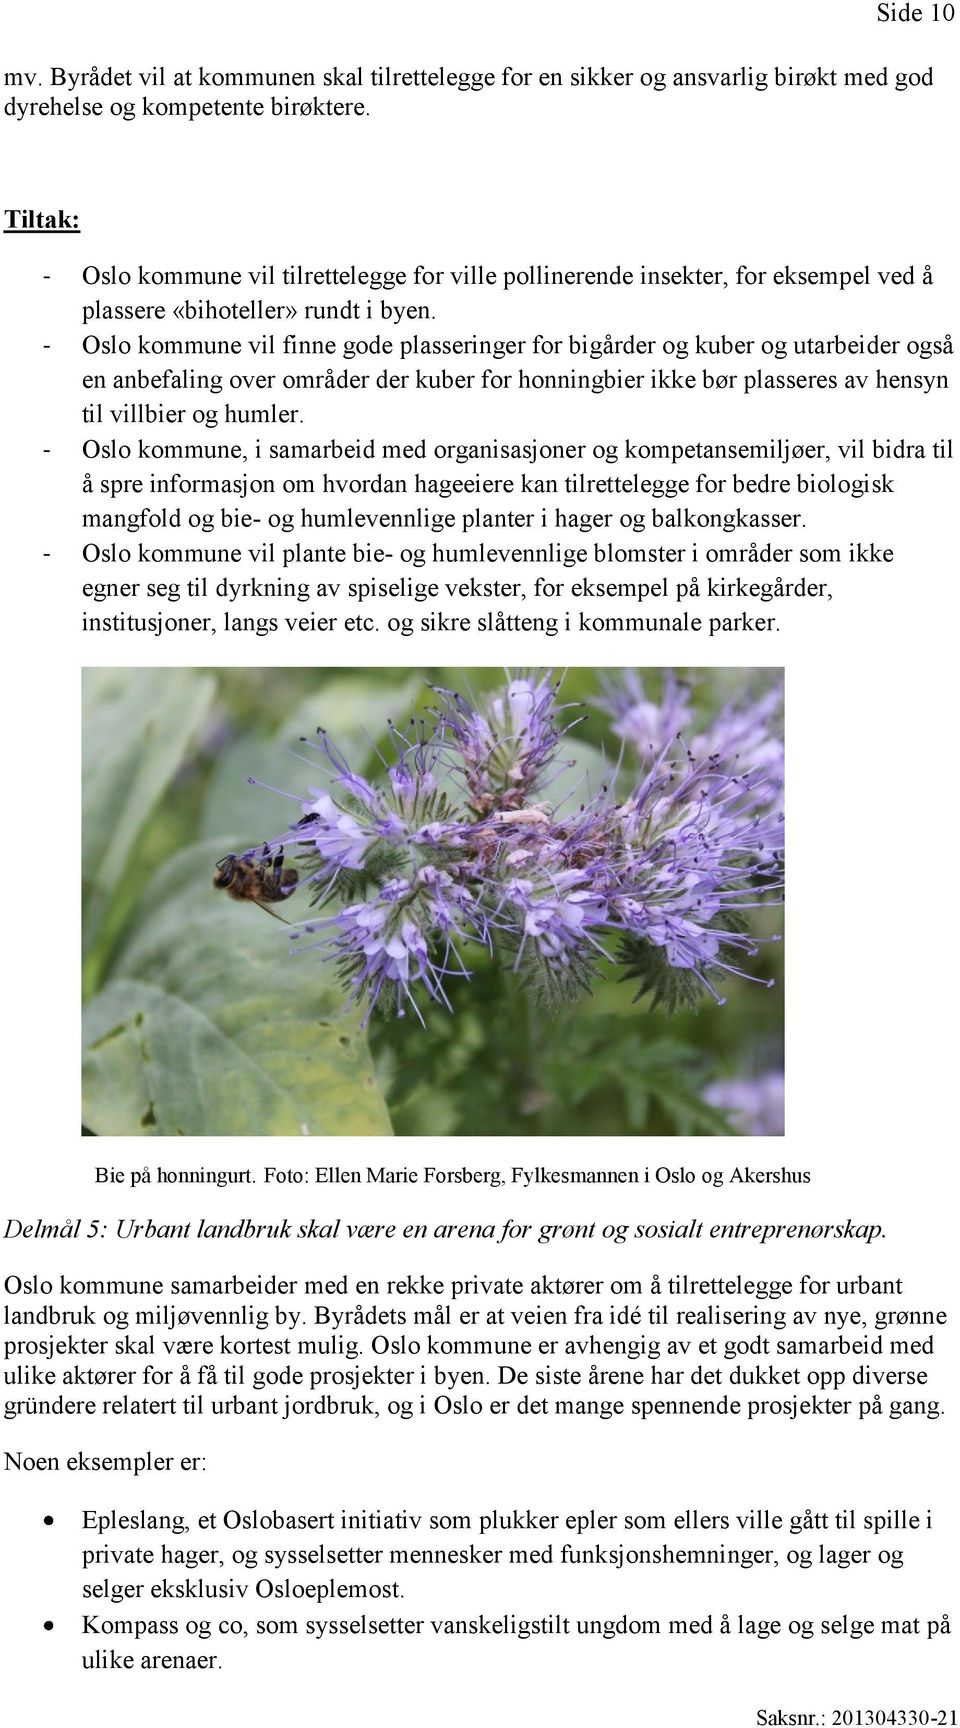 - Oslo kommune vil finne gode plasseringer for bigårder og kuber og utarbeider også en anbefaling over områder der kuber for honningbier ikke bør plasseres av hensyn til villbier og humler.